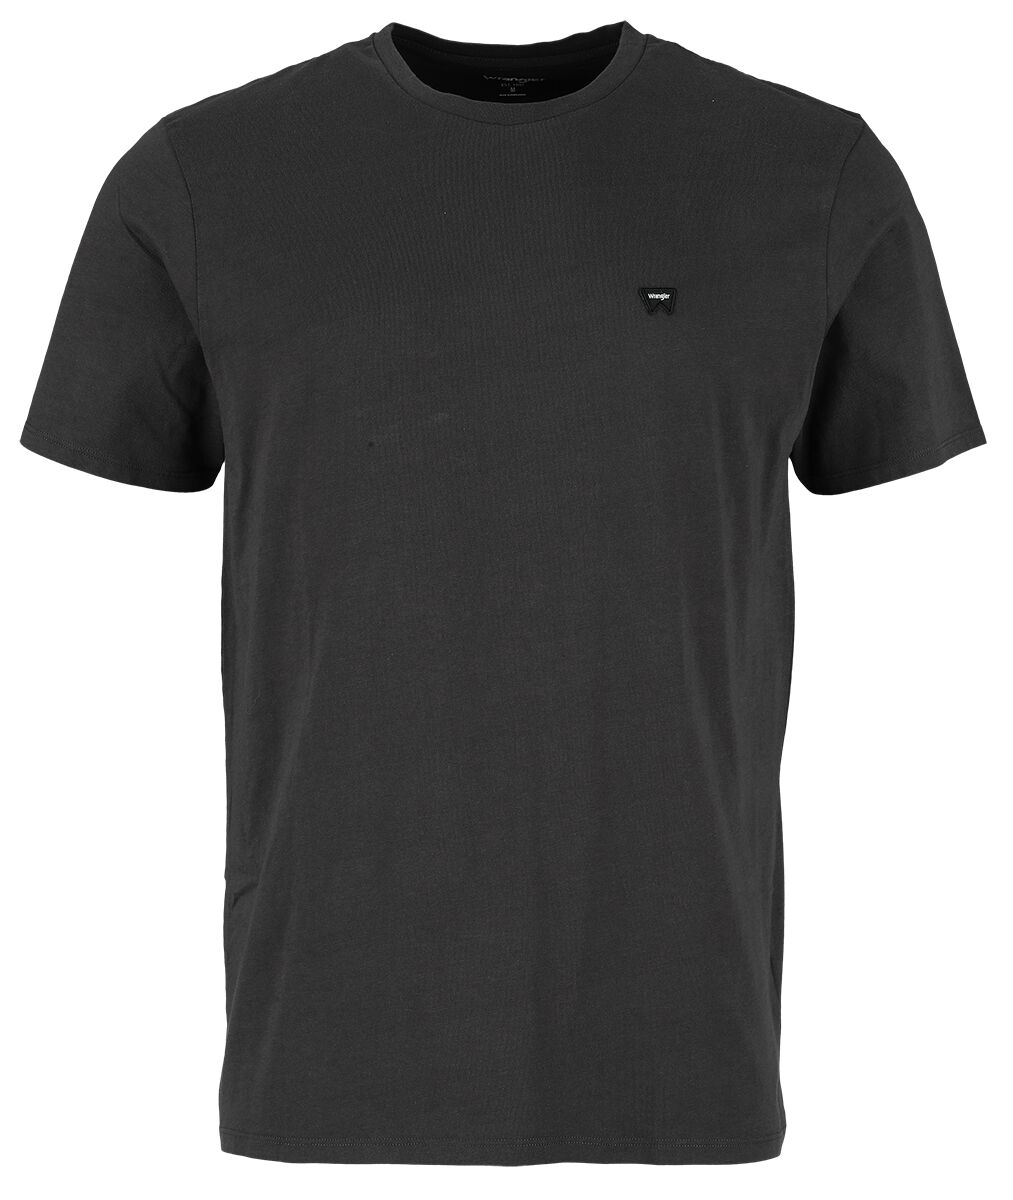 Wrangler T-Shirt - Sign Off Tee Faded Black - S bis XXL - für Männer - Größe S - schwarz